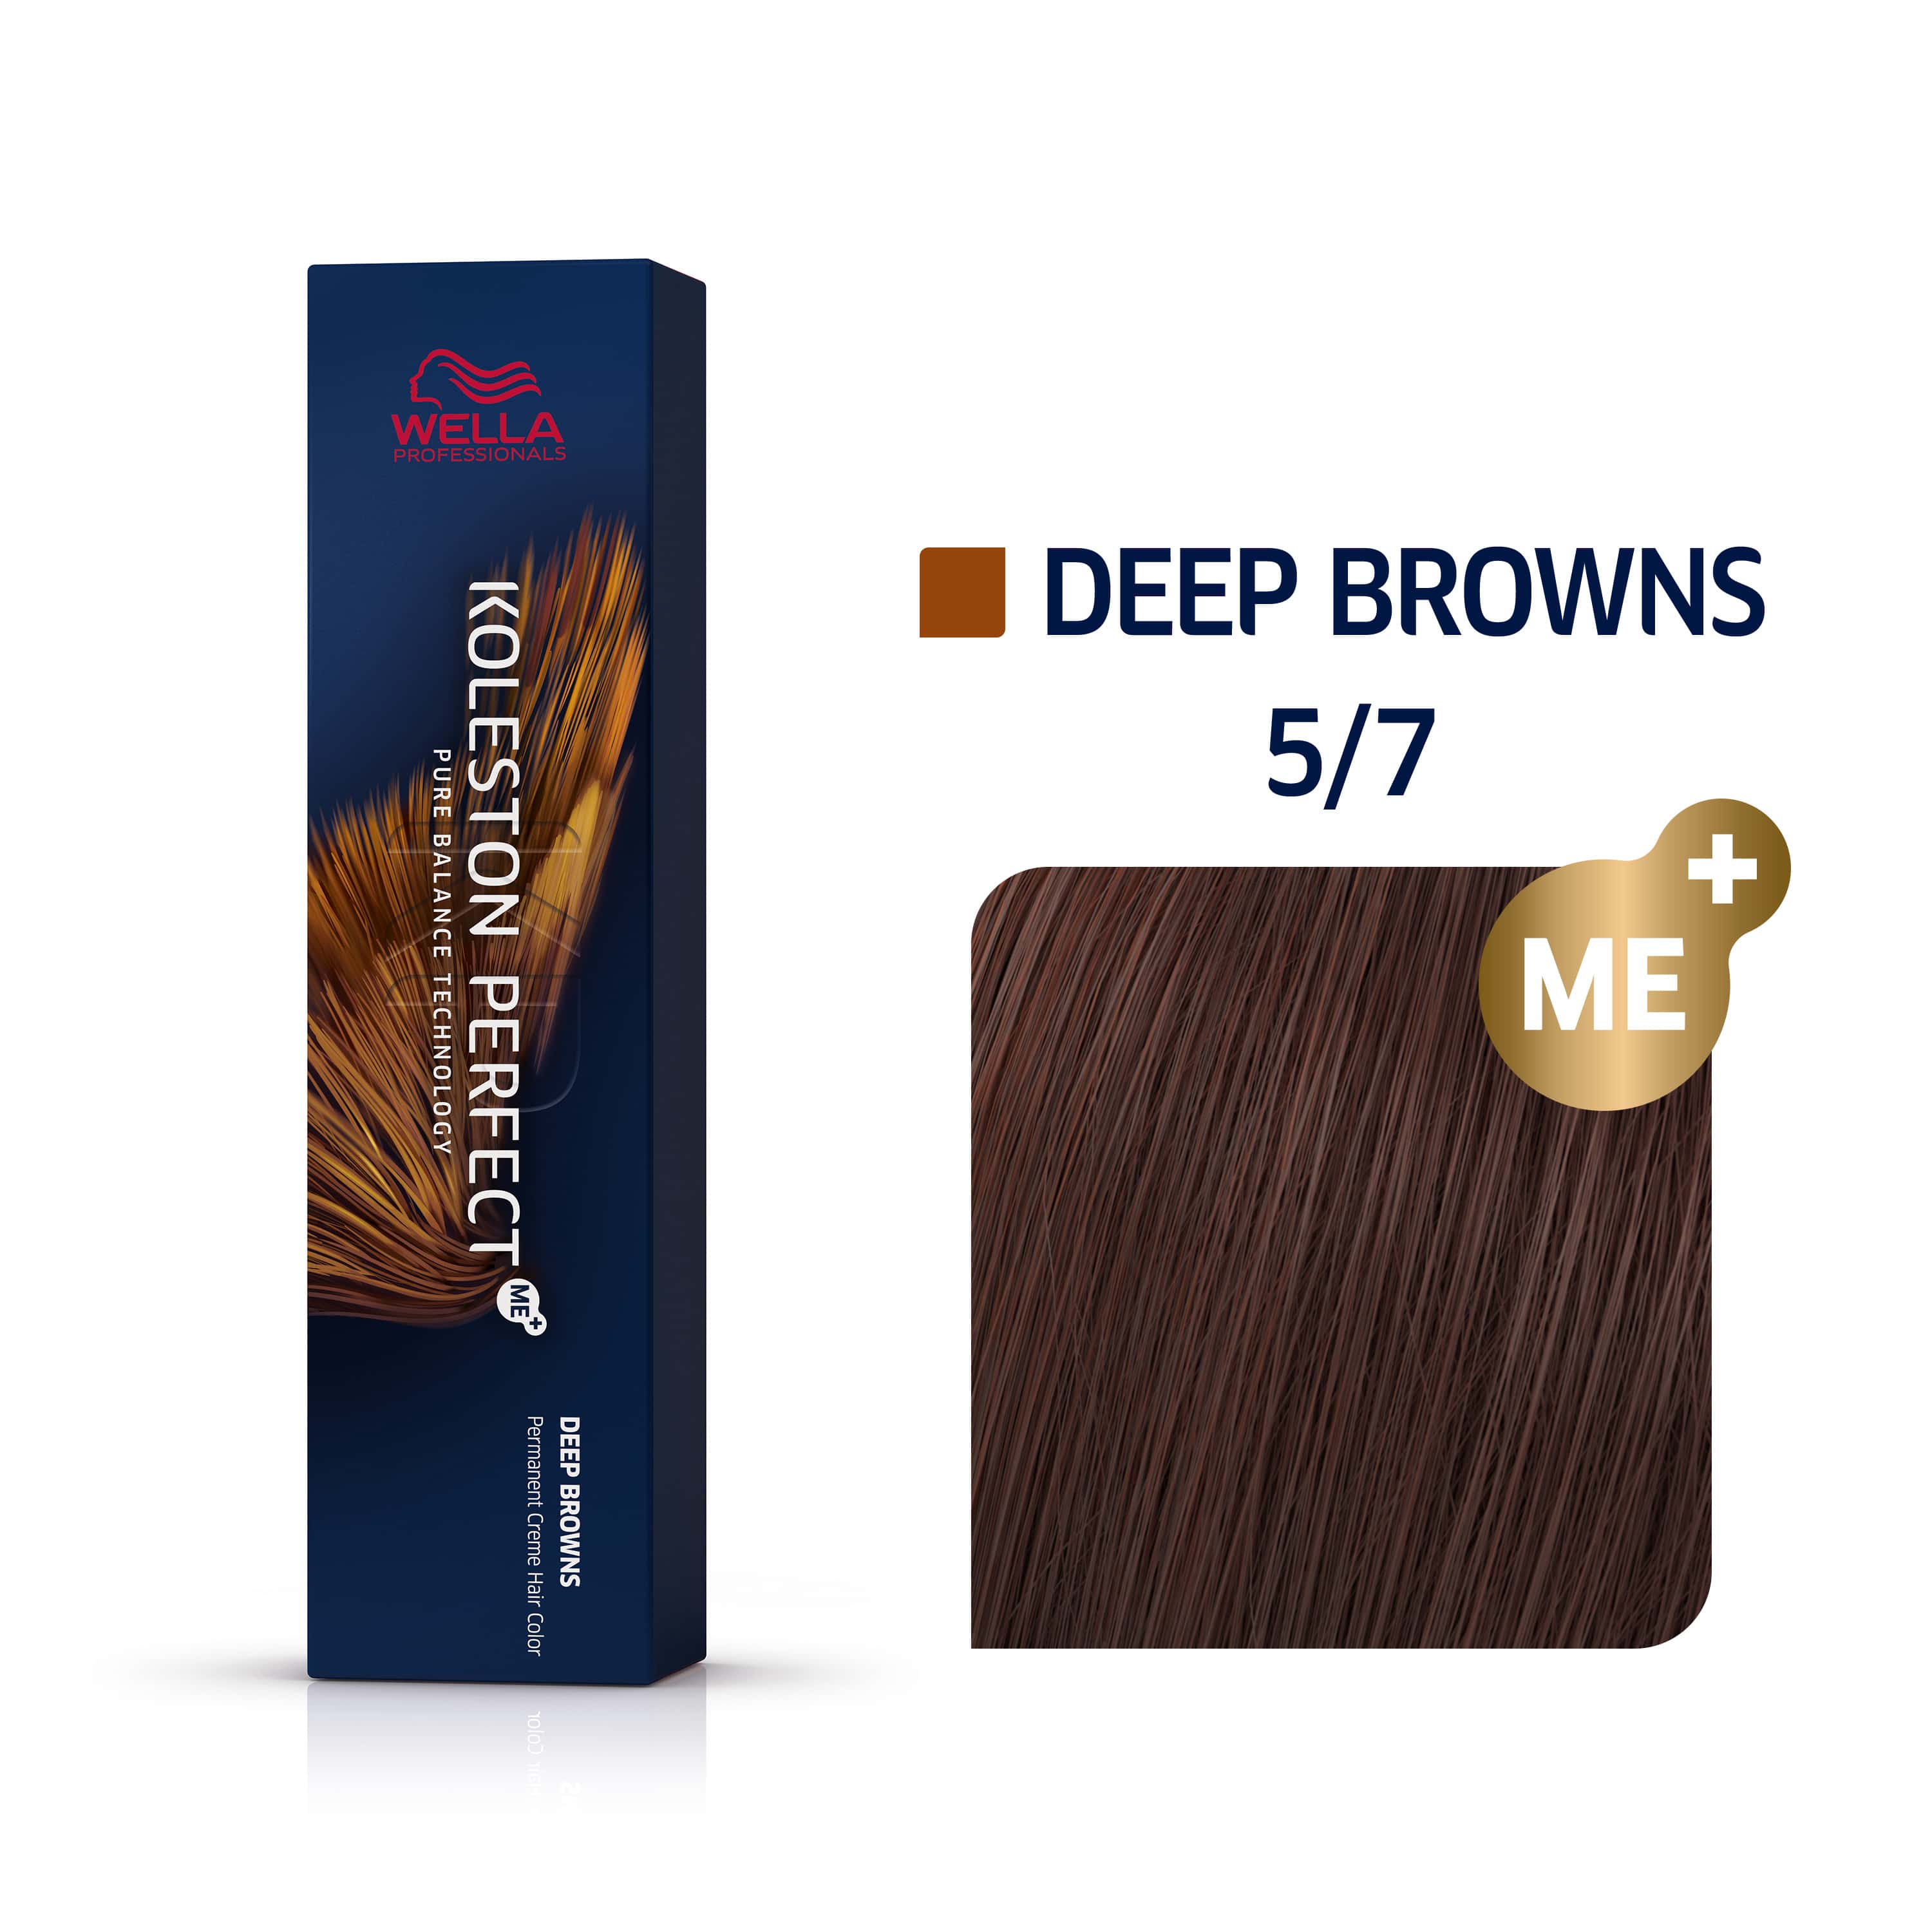 a box of wella colour deep browns 5/7